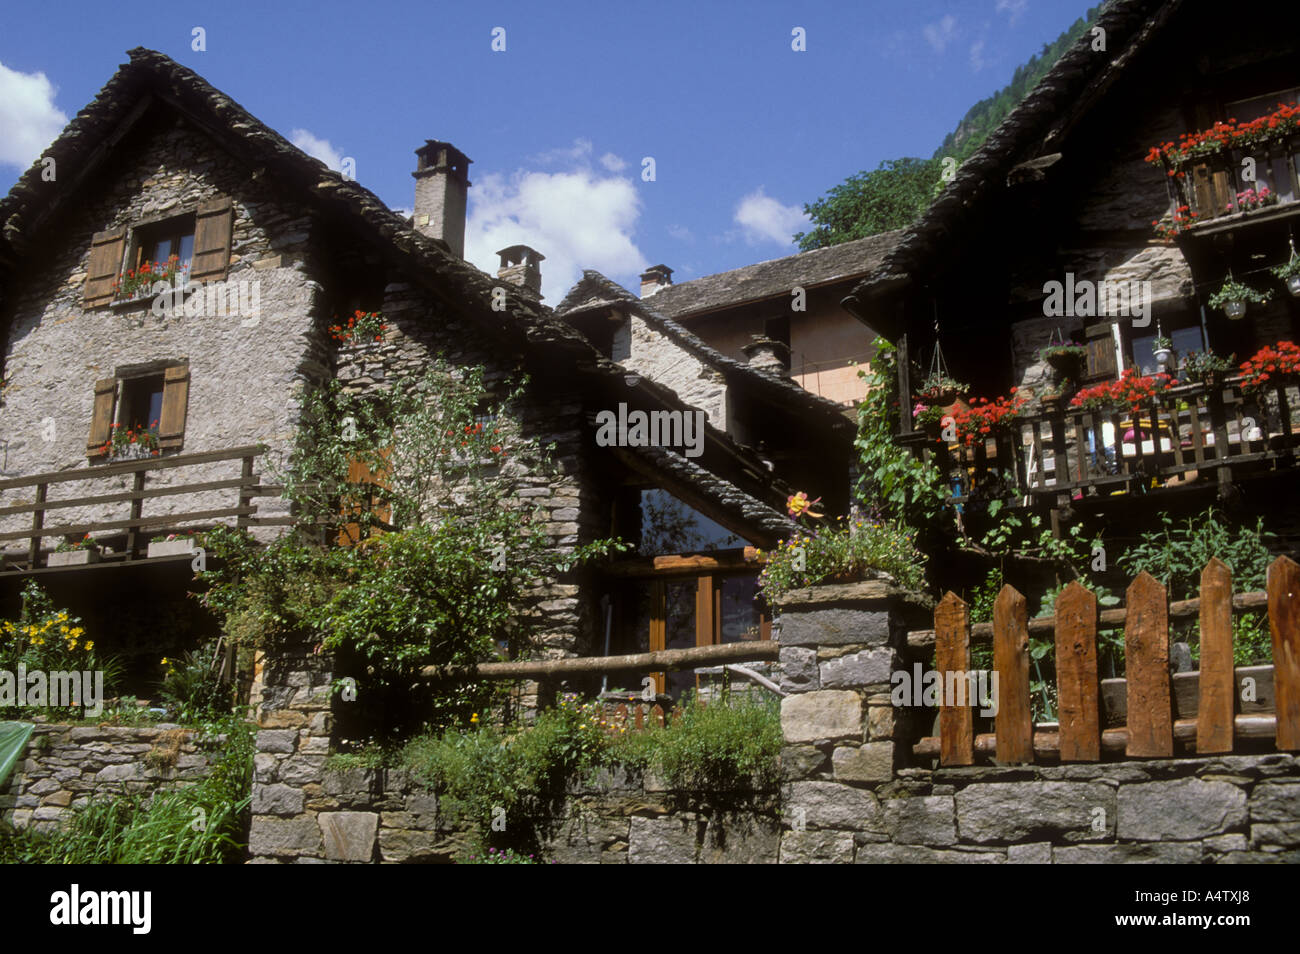 Jahrhunderte alte Häuser in der Stadt Sogogna Val Verzasca-Tal Tessin  Schweiz Alpen Südschweiz Stockfotografie - Alamy